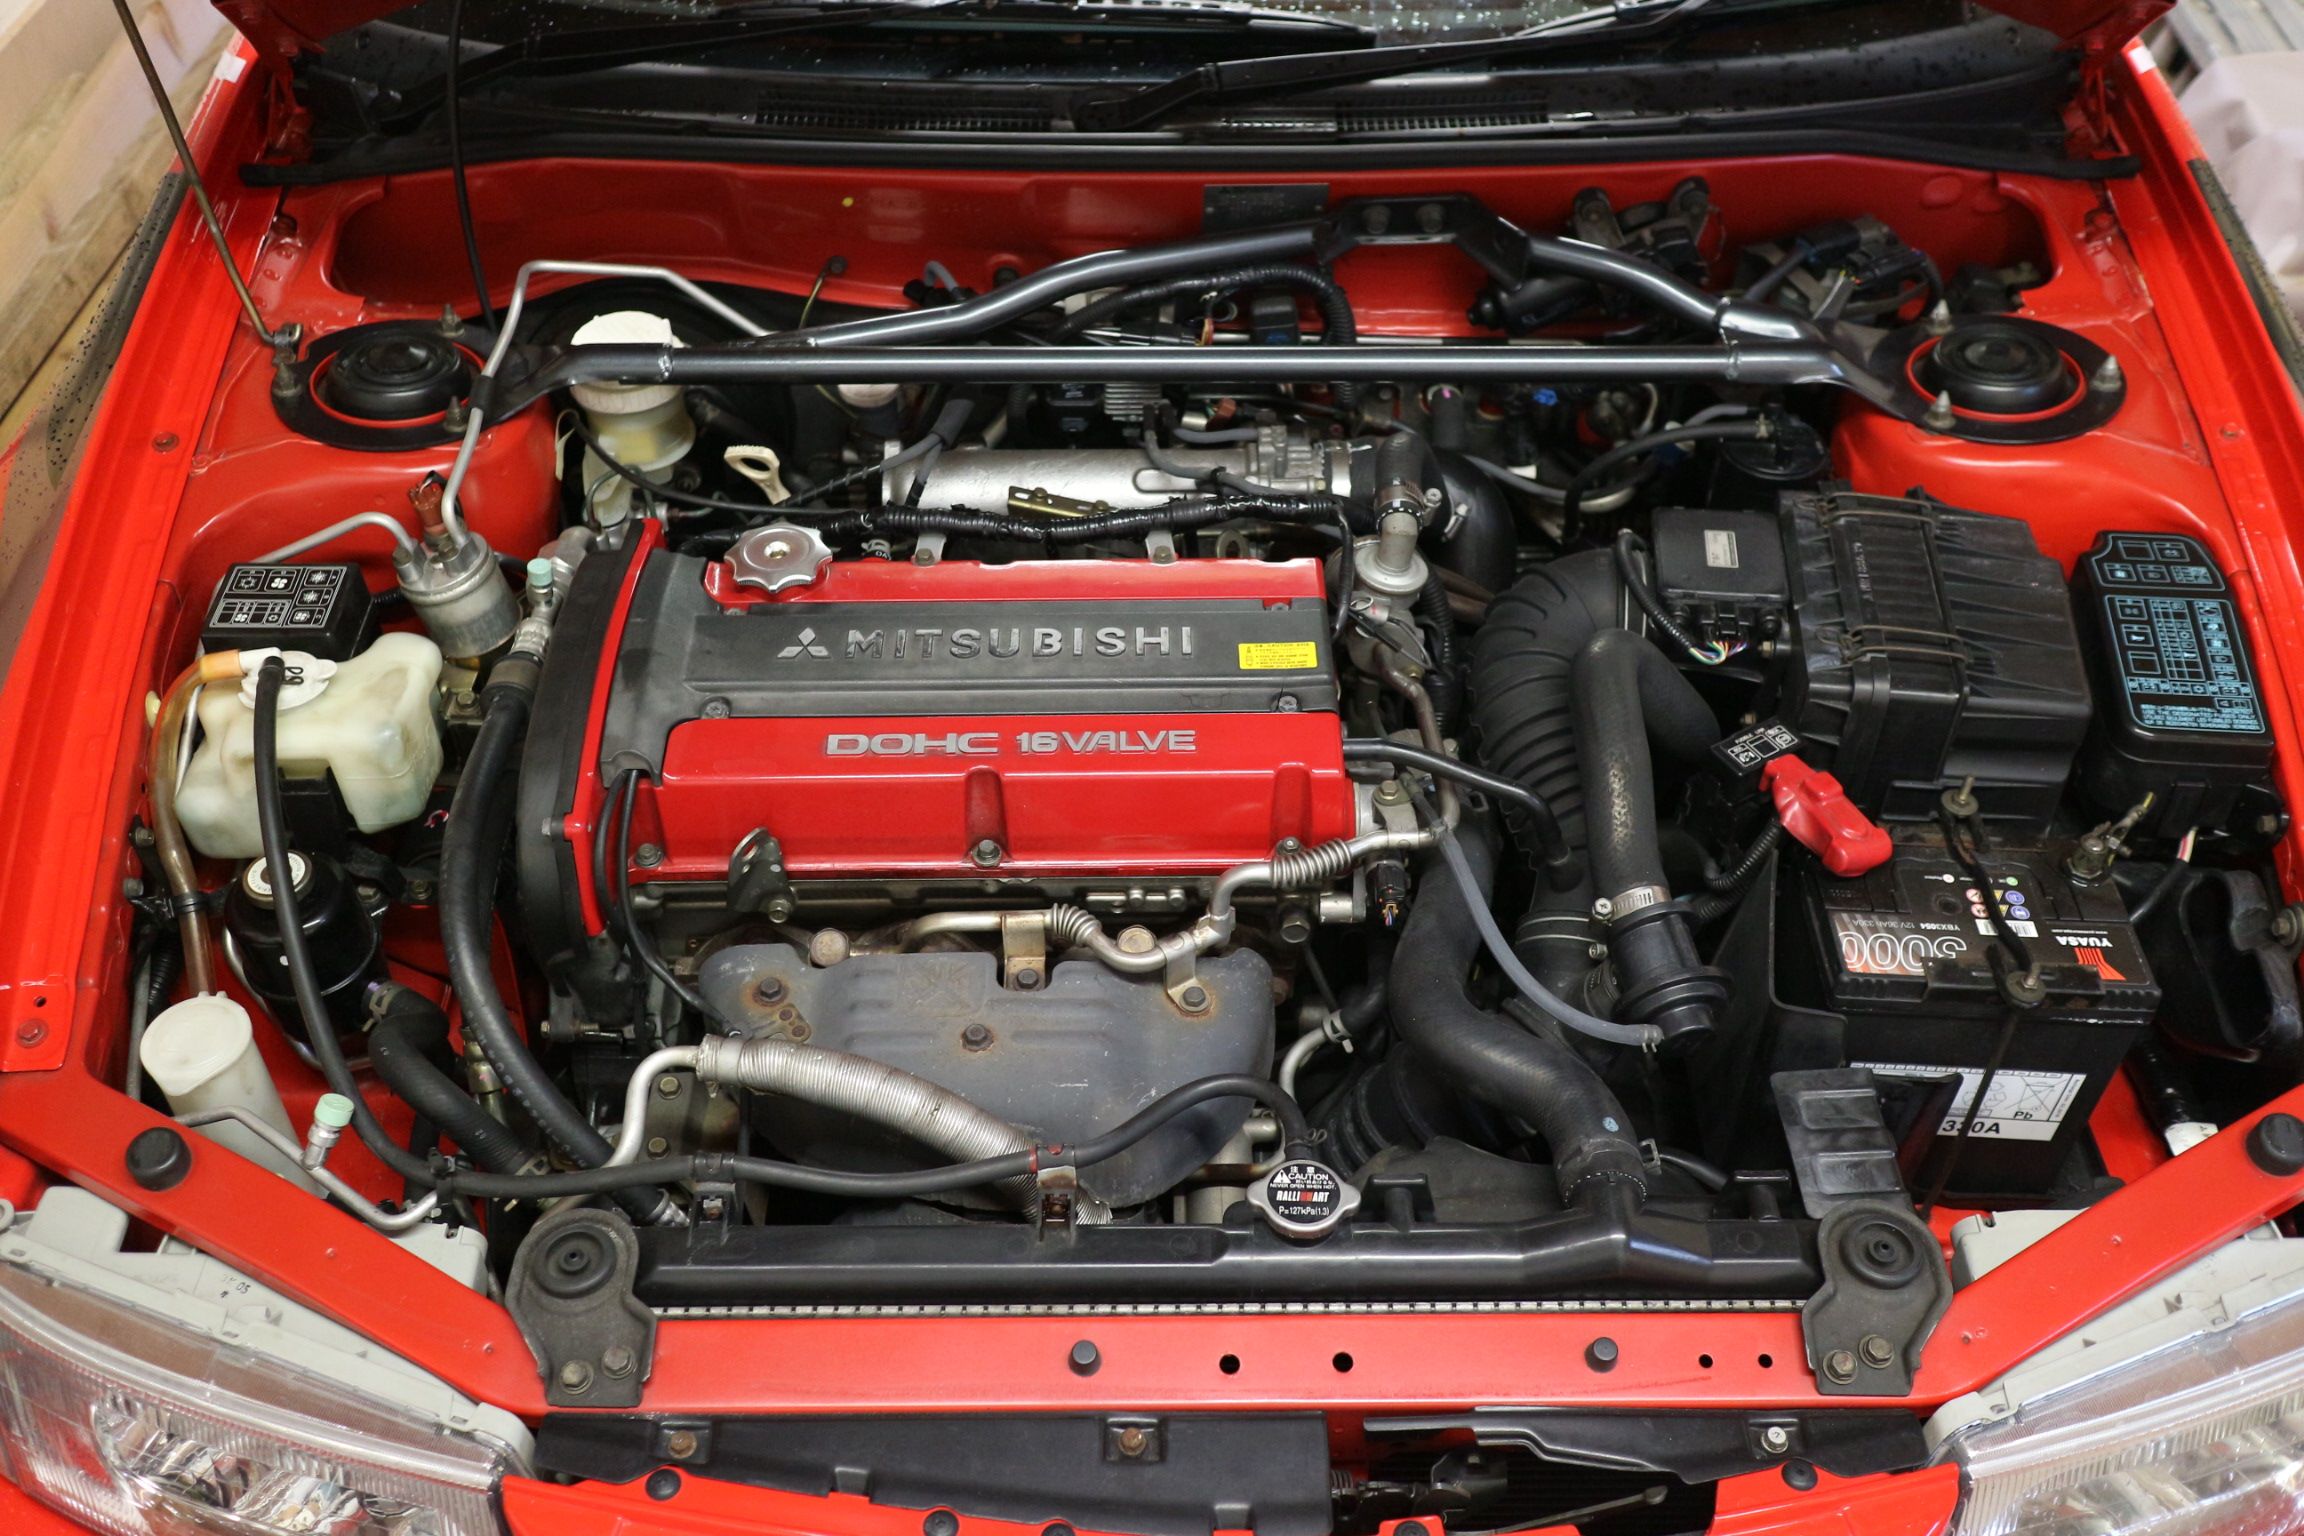 Mitsubishi 4G63T engine